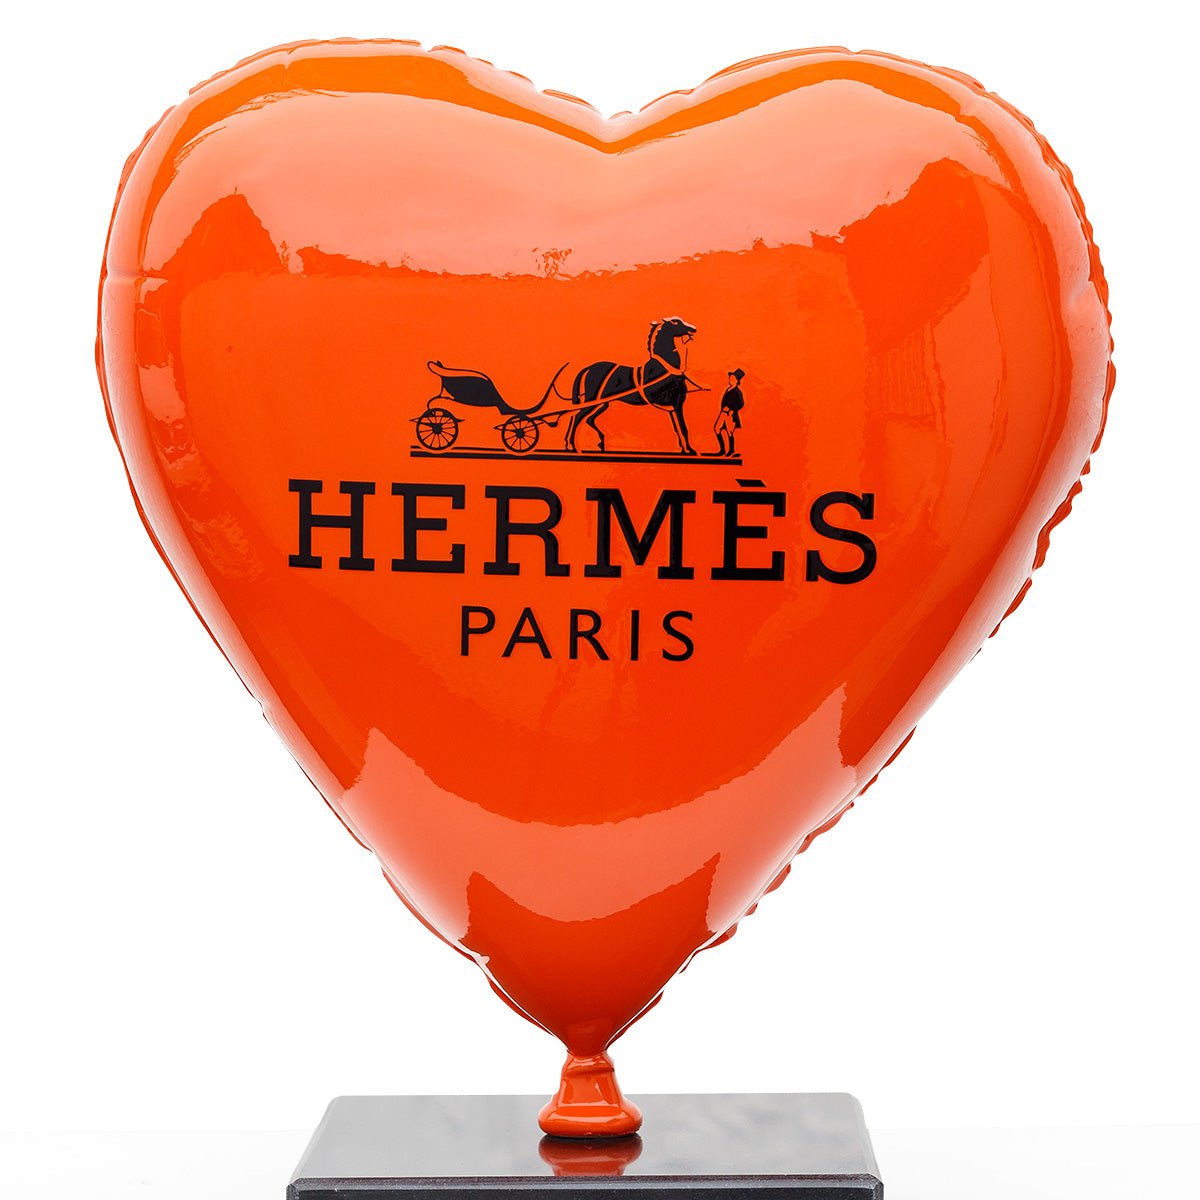 Hermes Bear VIIII - Original Sculpture by Naor